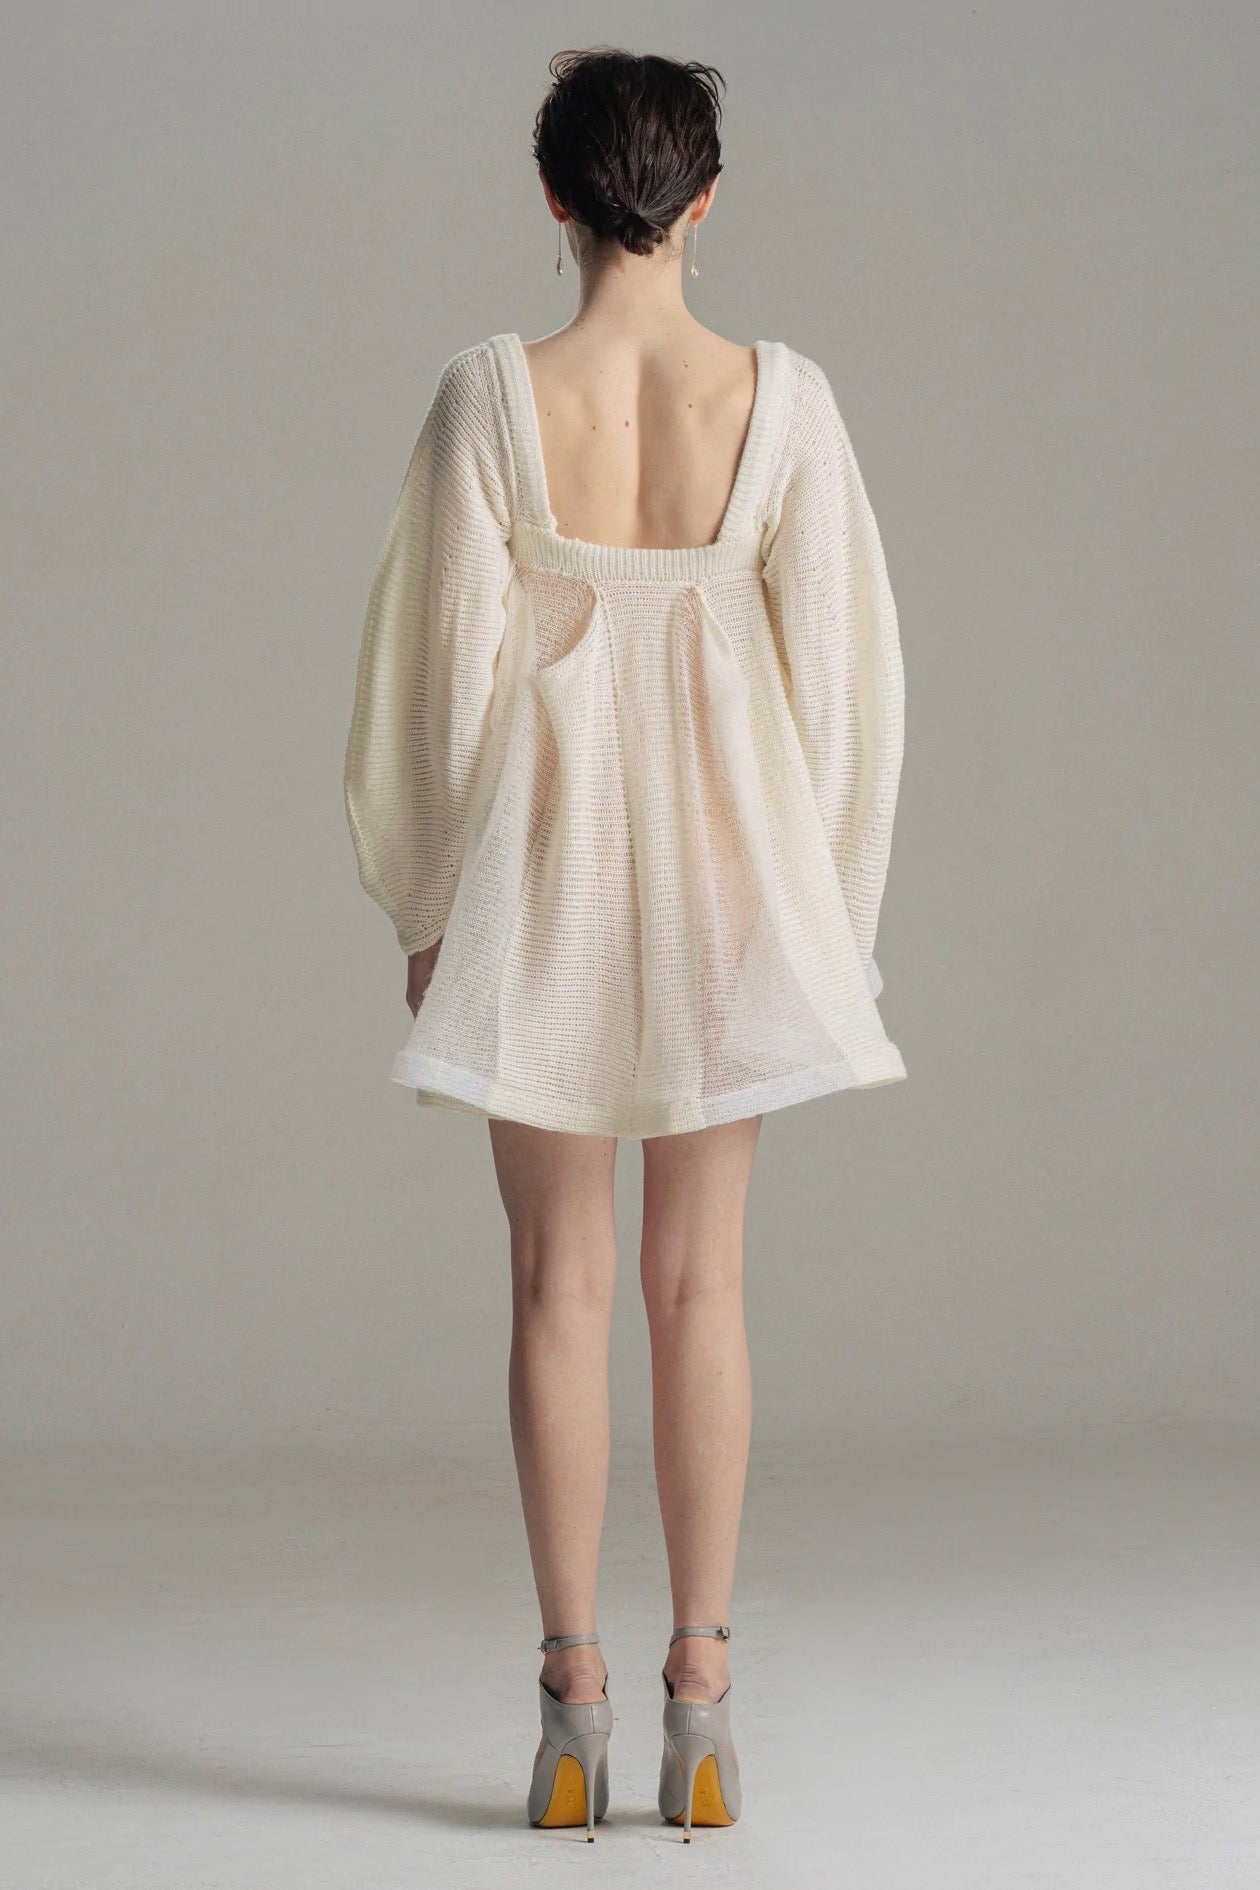 July Li - A Dress: White